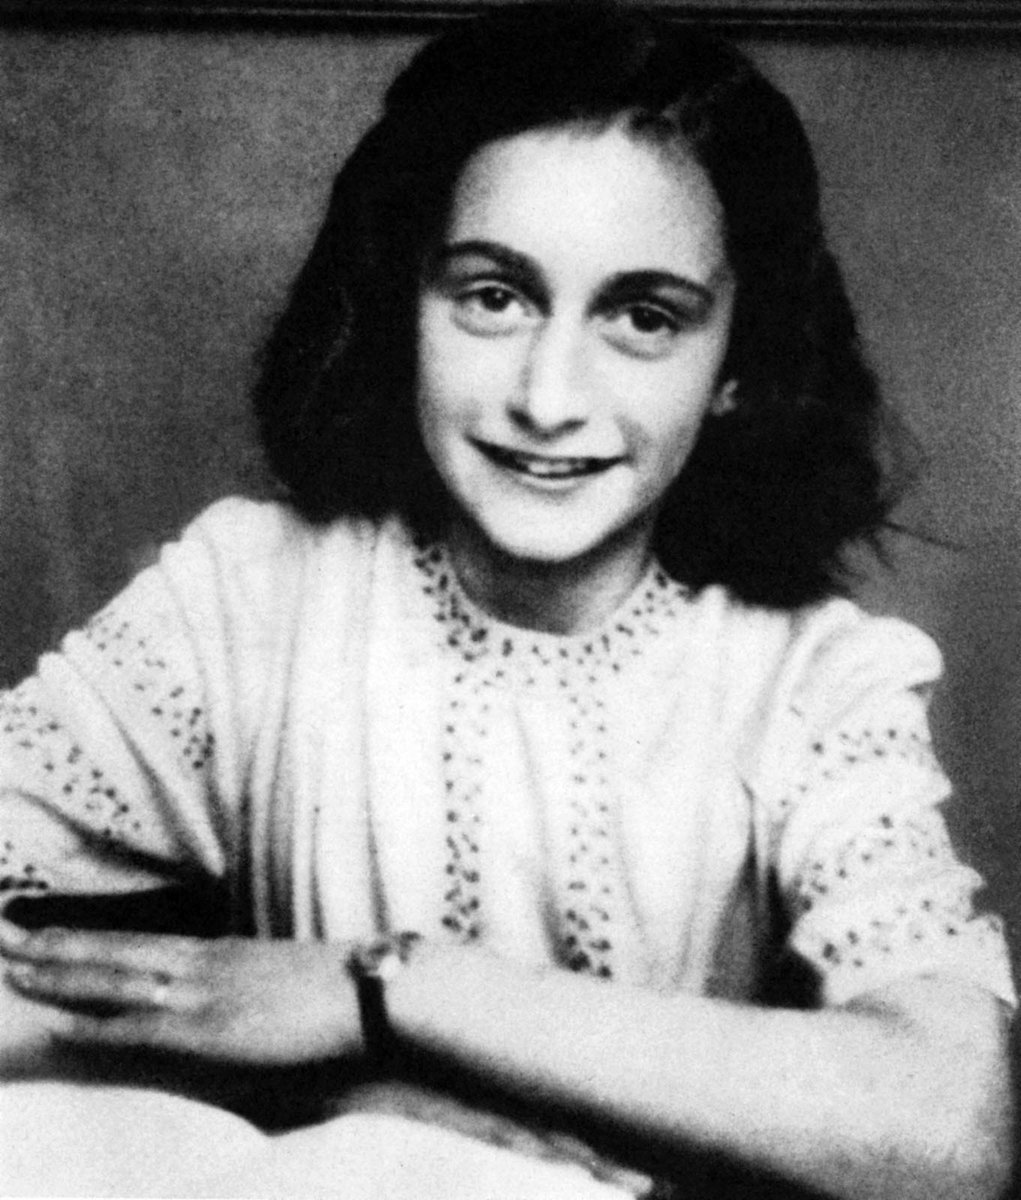 #AnneFrank Il y a 78 ans, le 12 mars 1945, décédait Anne Frank, jeune adolescente juive au destin tragique, dans le camp de concentration de Bergen-Belsen. 🕯